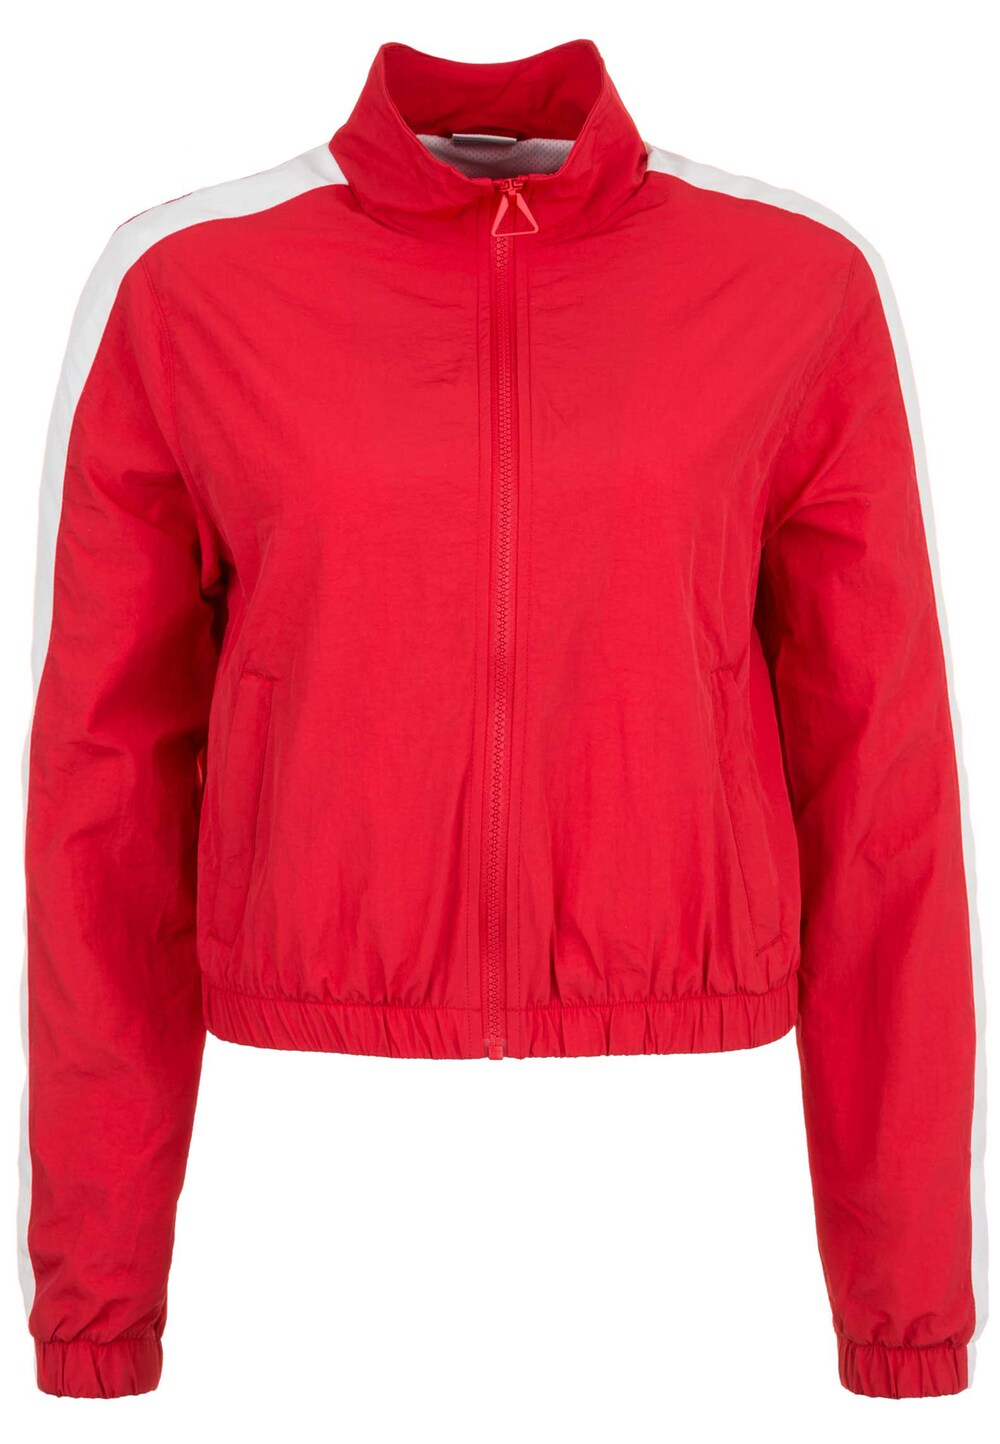 Межсезонная куртка Urban Classics, красный